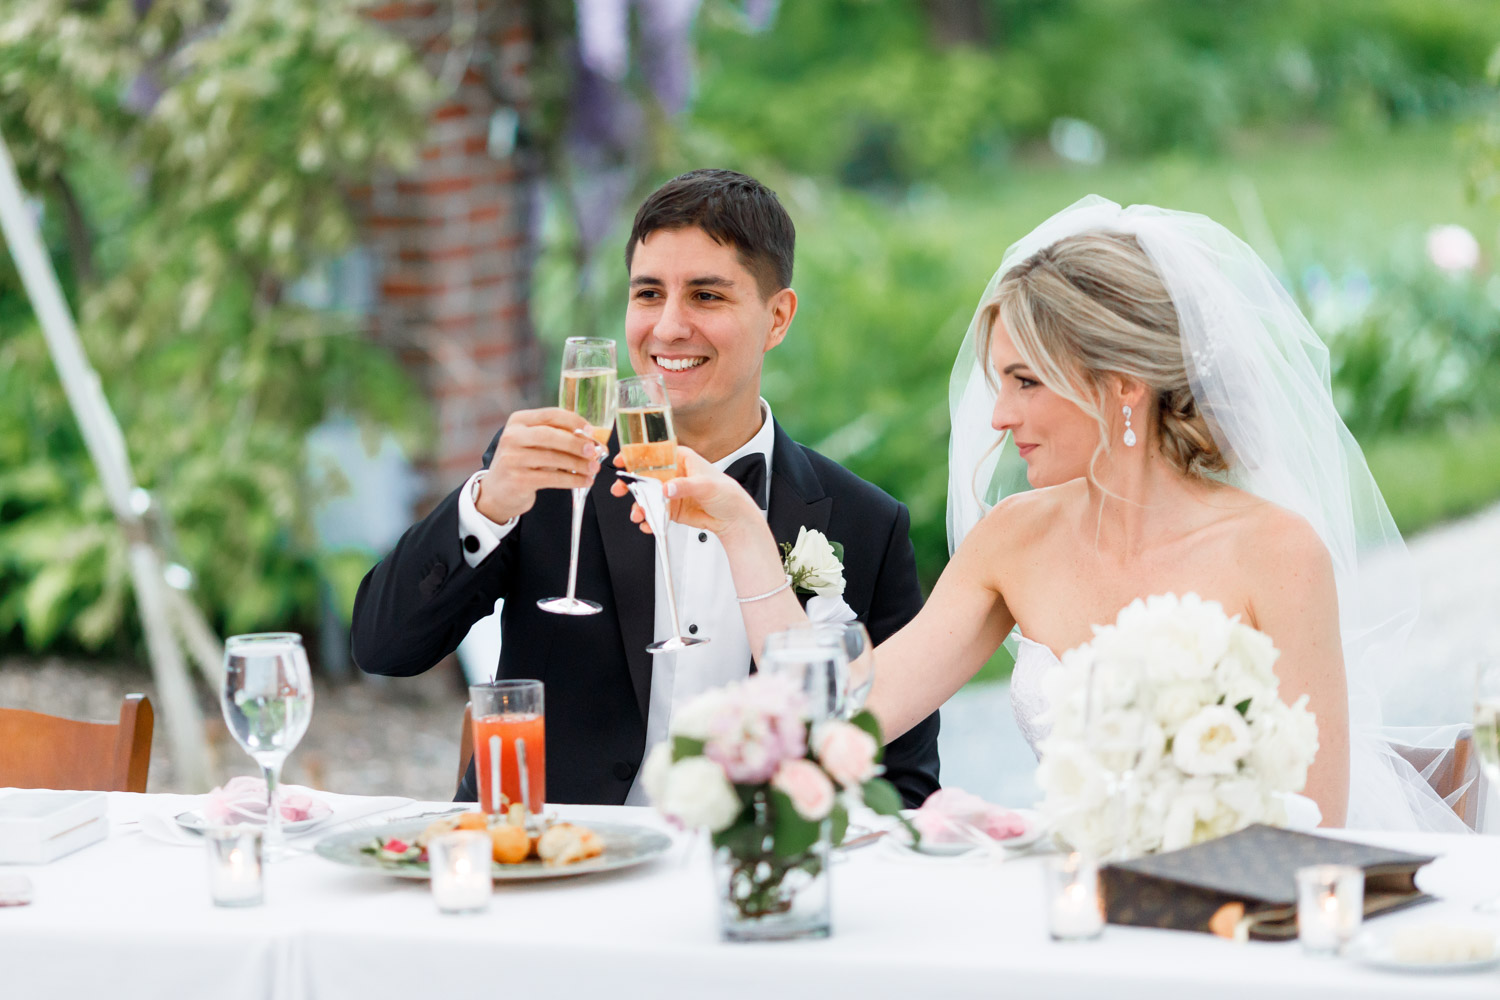 Glen Magna Farms Wedding reception photos